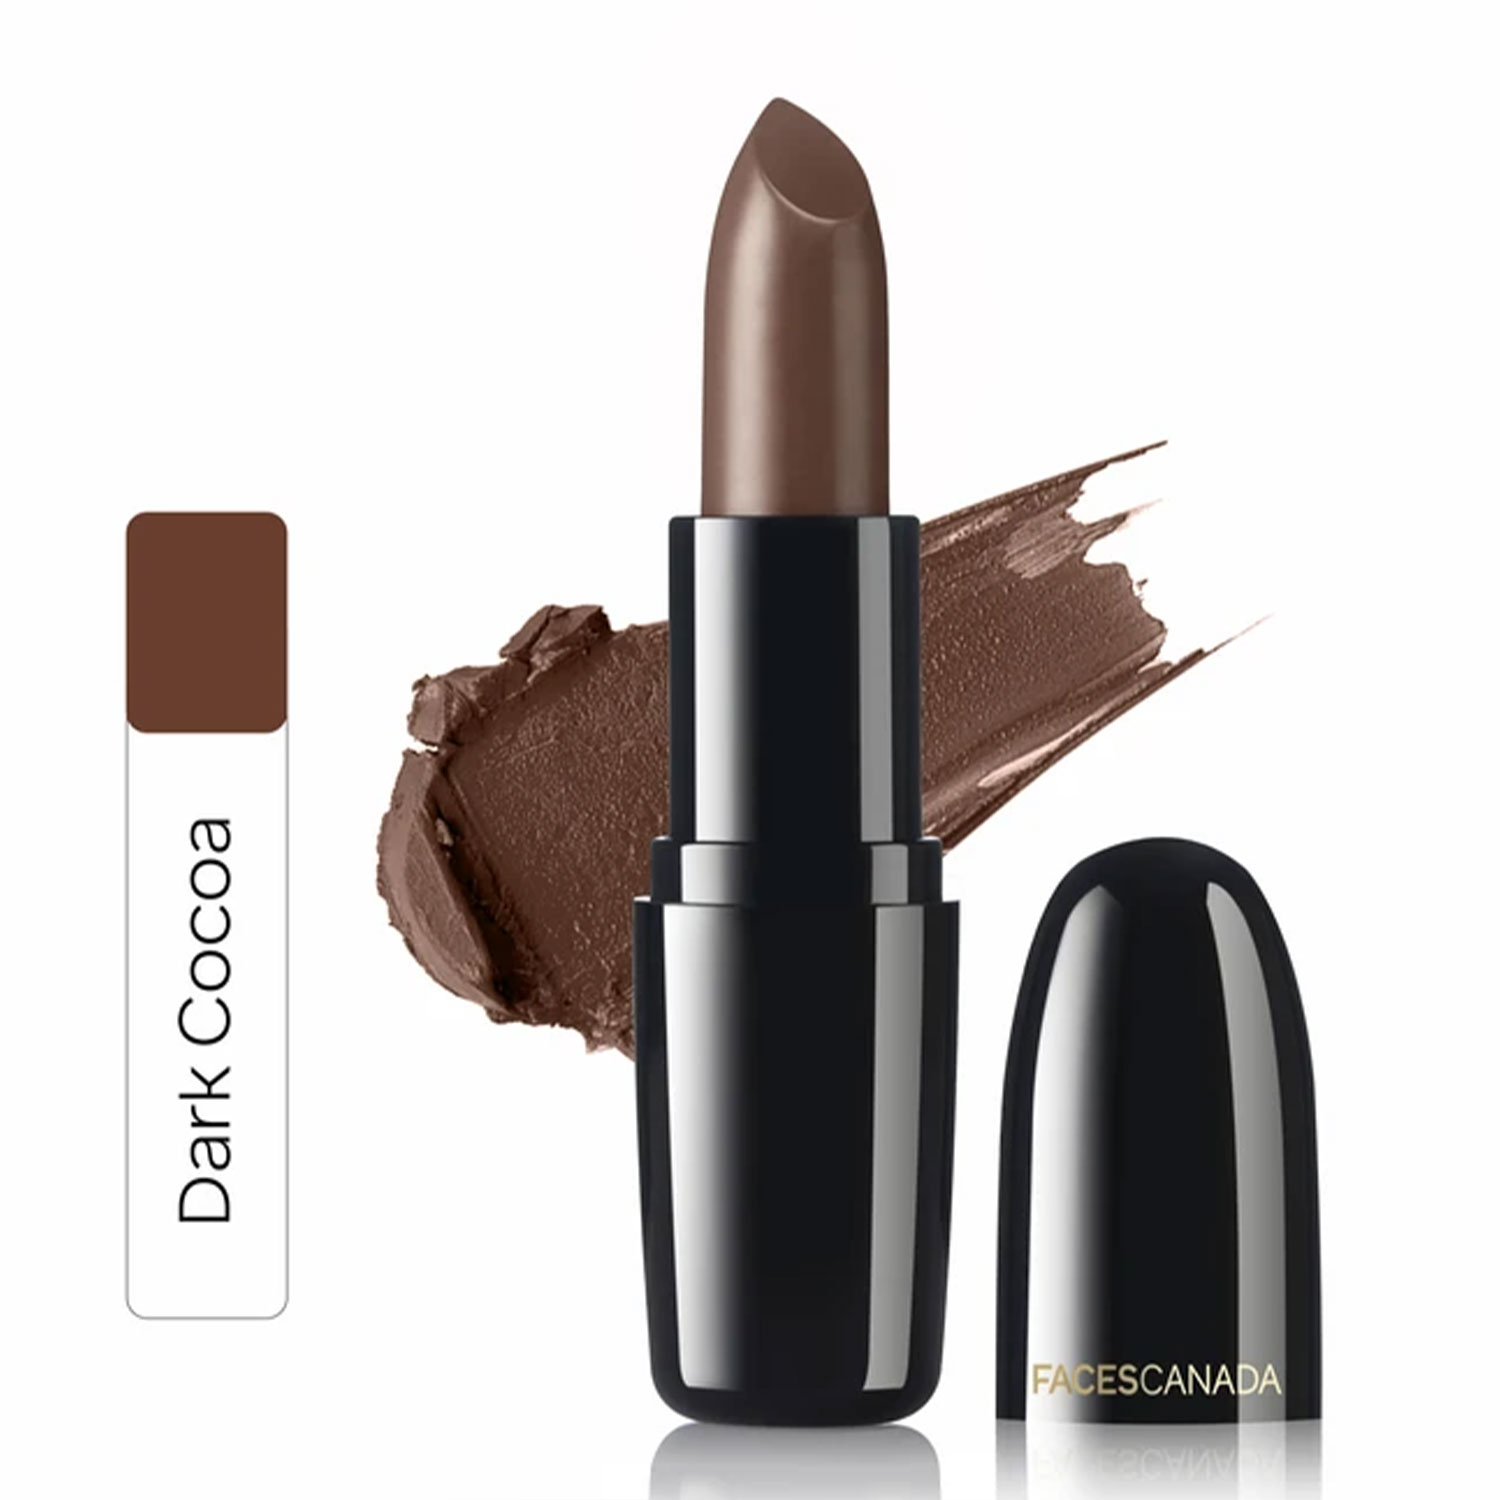 Faces Canada Weightless Cream Finish Lipstick, 4gm-Dark Cocoa 18